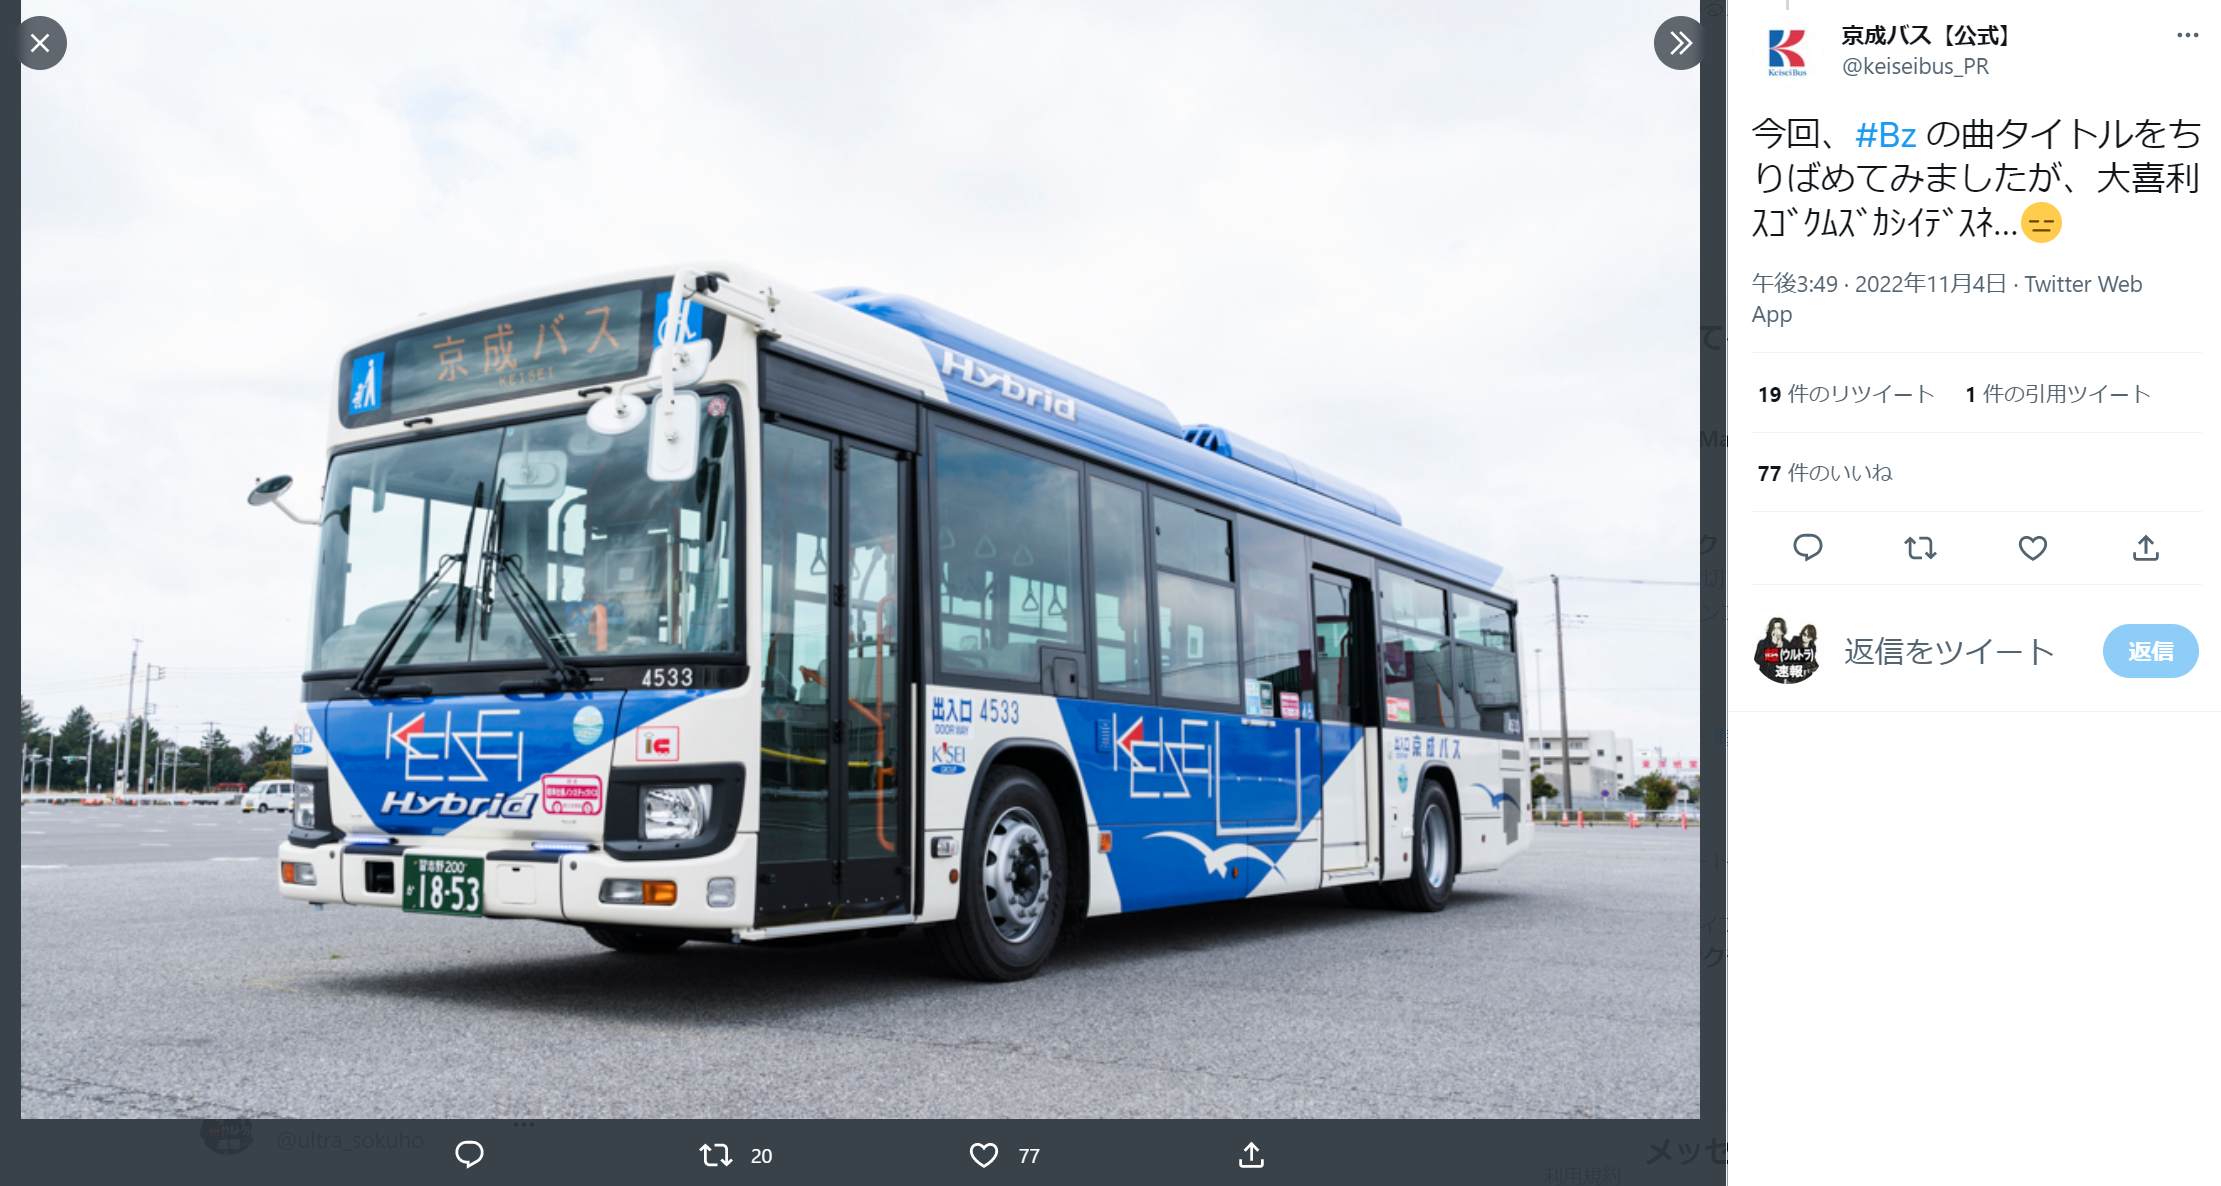 京成バスが『B’z ULTRA FIREWORKS 2022-2023』臨時便運航に際して行ったツイートのキャプチャ画像